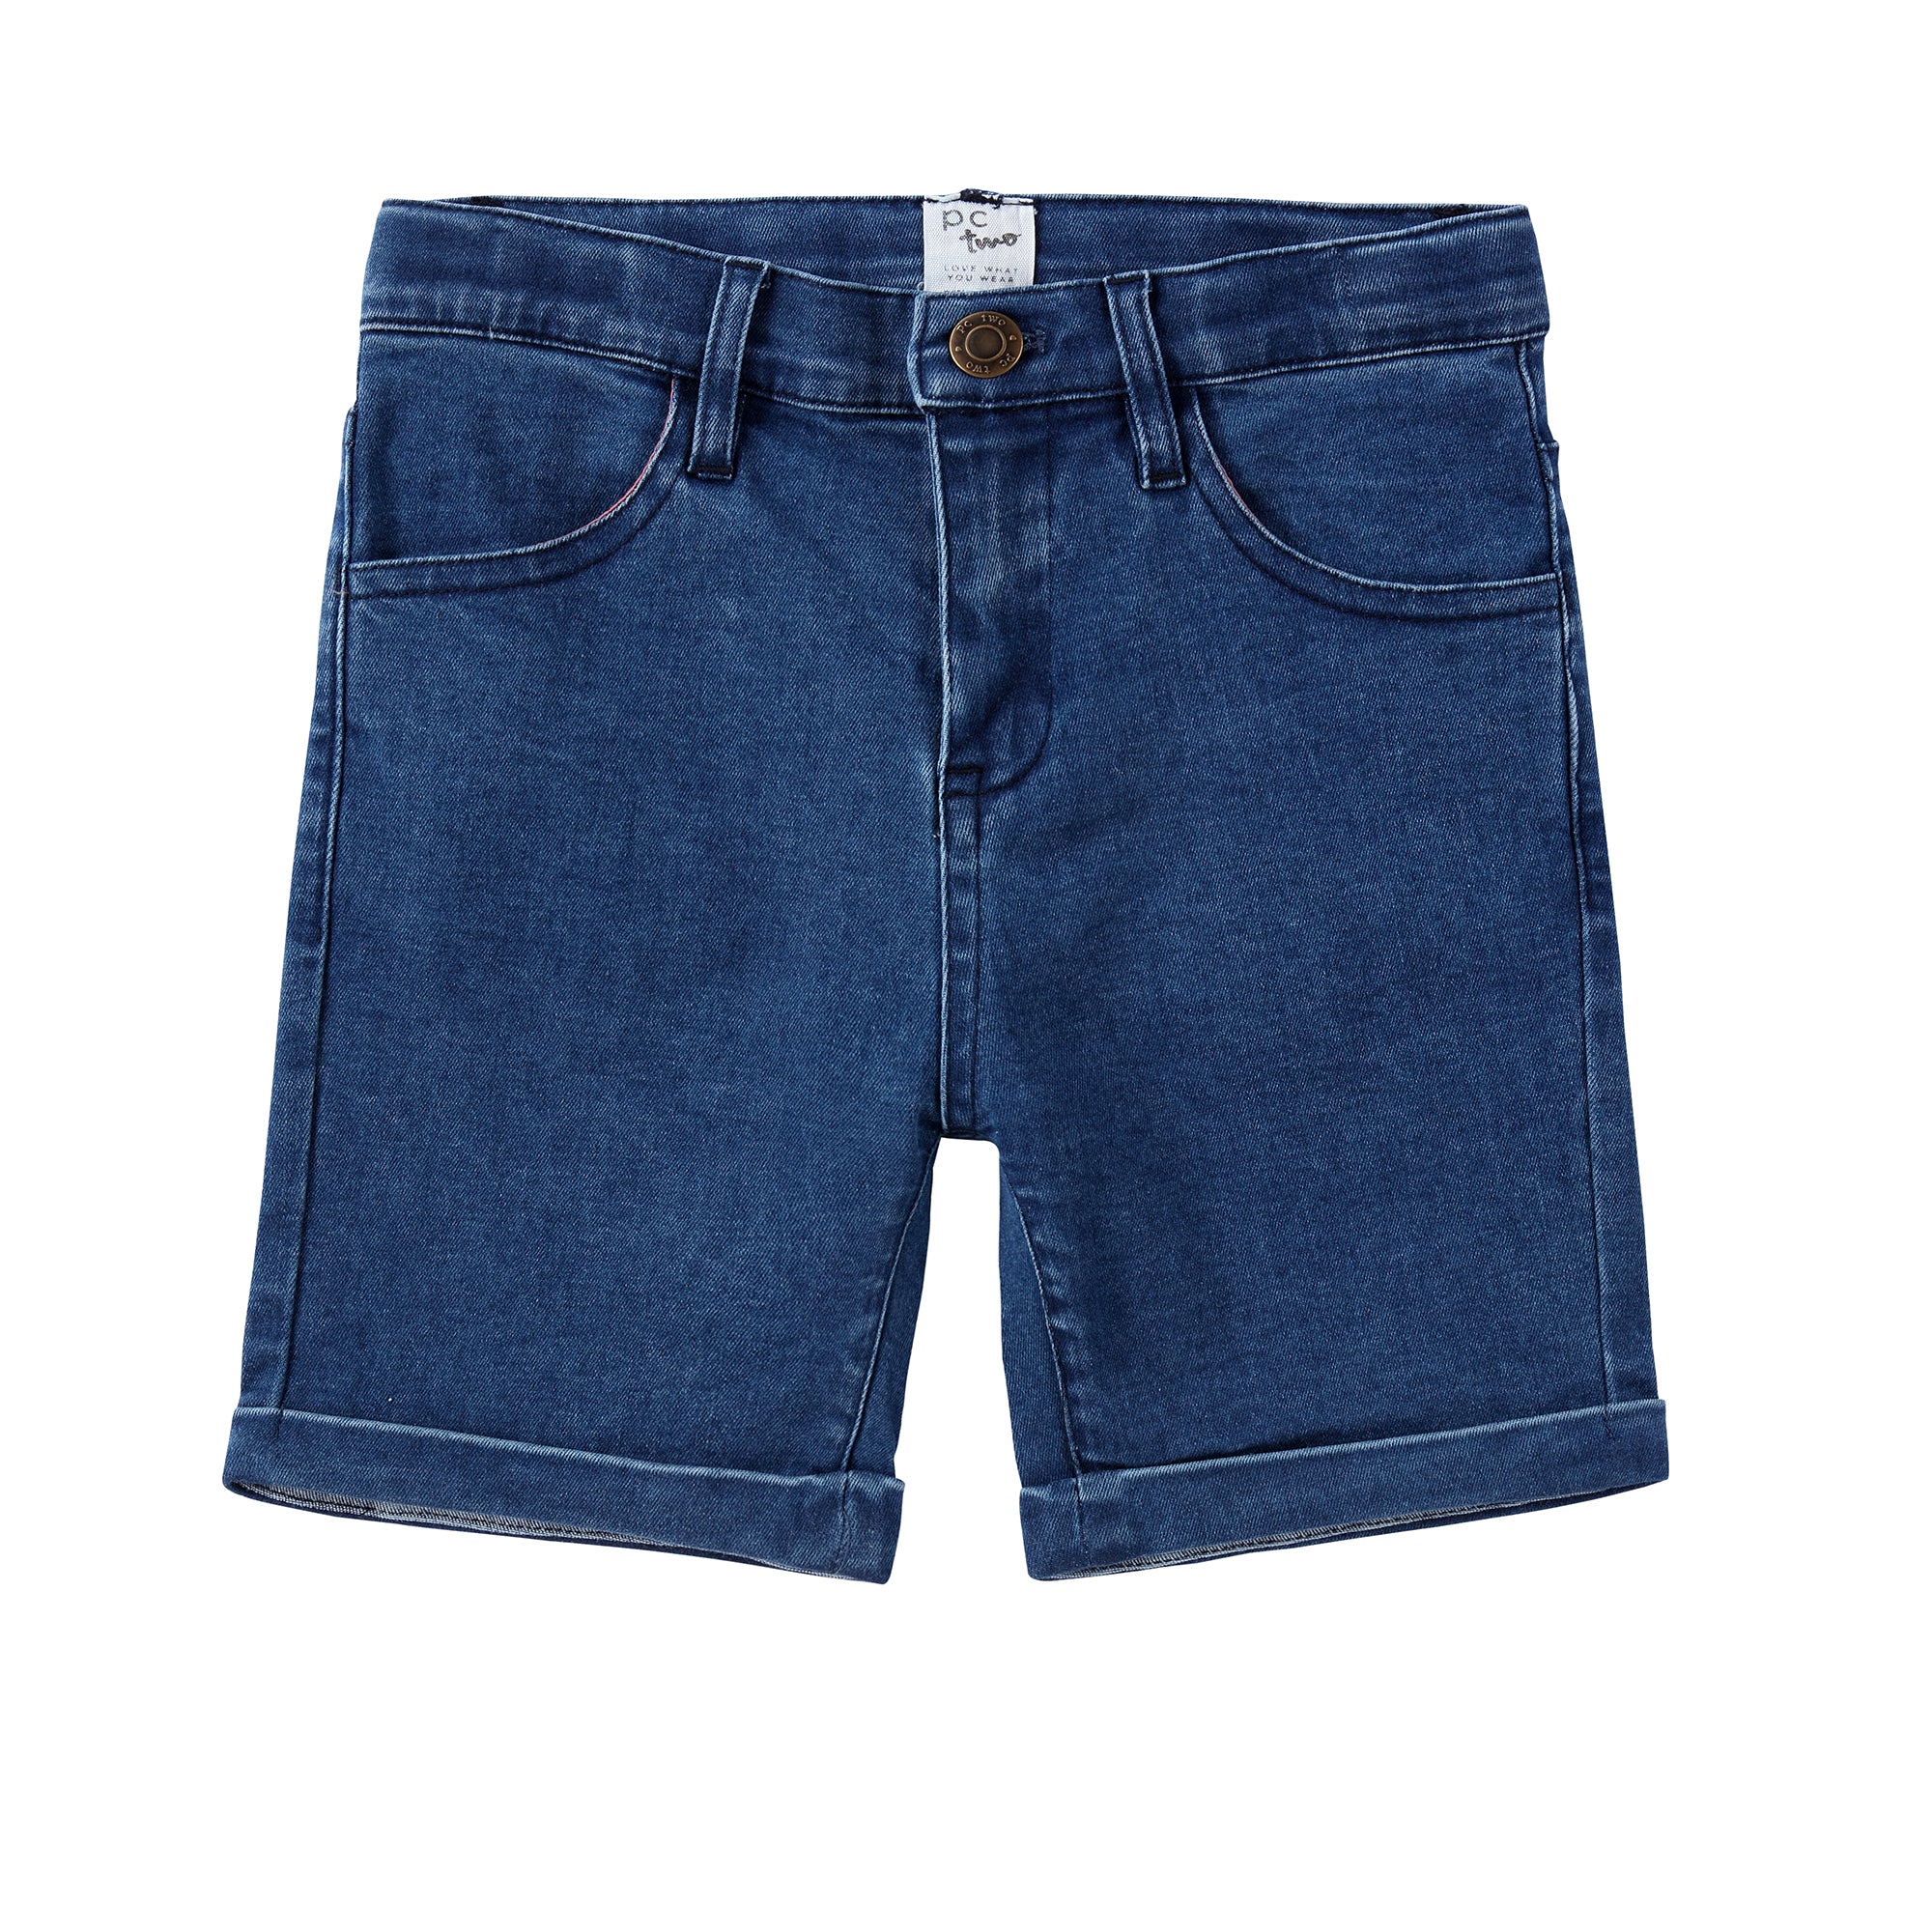 Blue Denim Shorts – Petit Clair